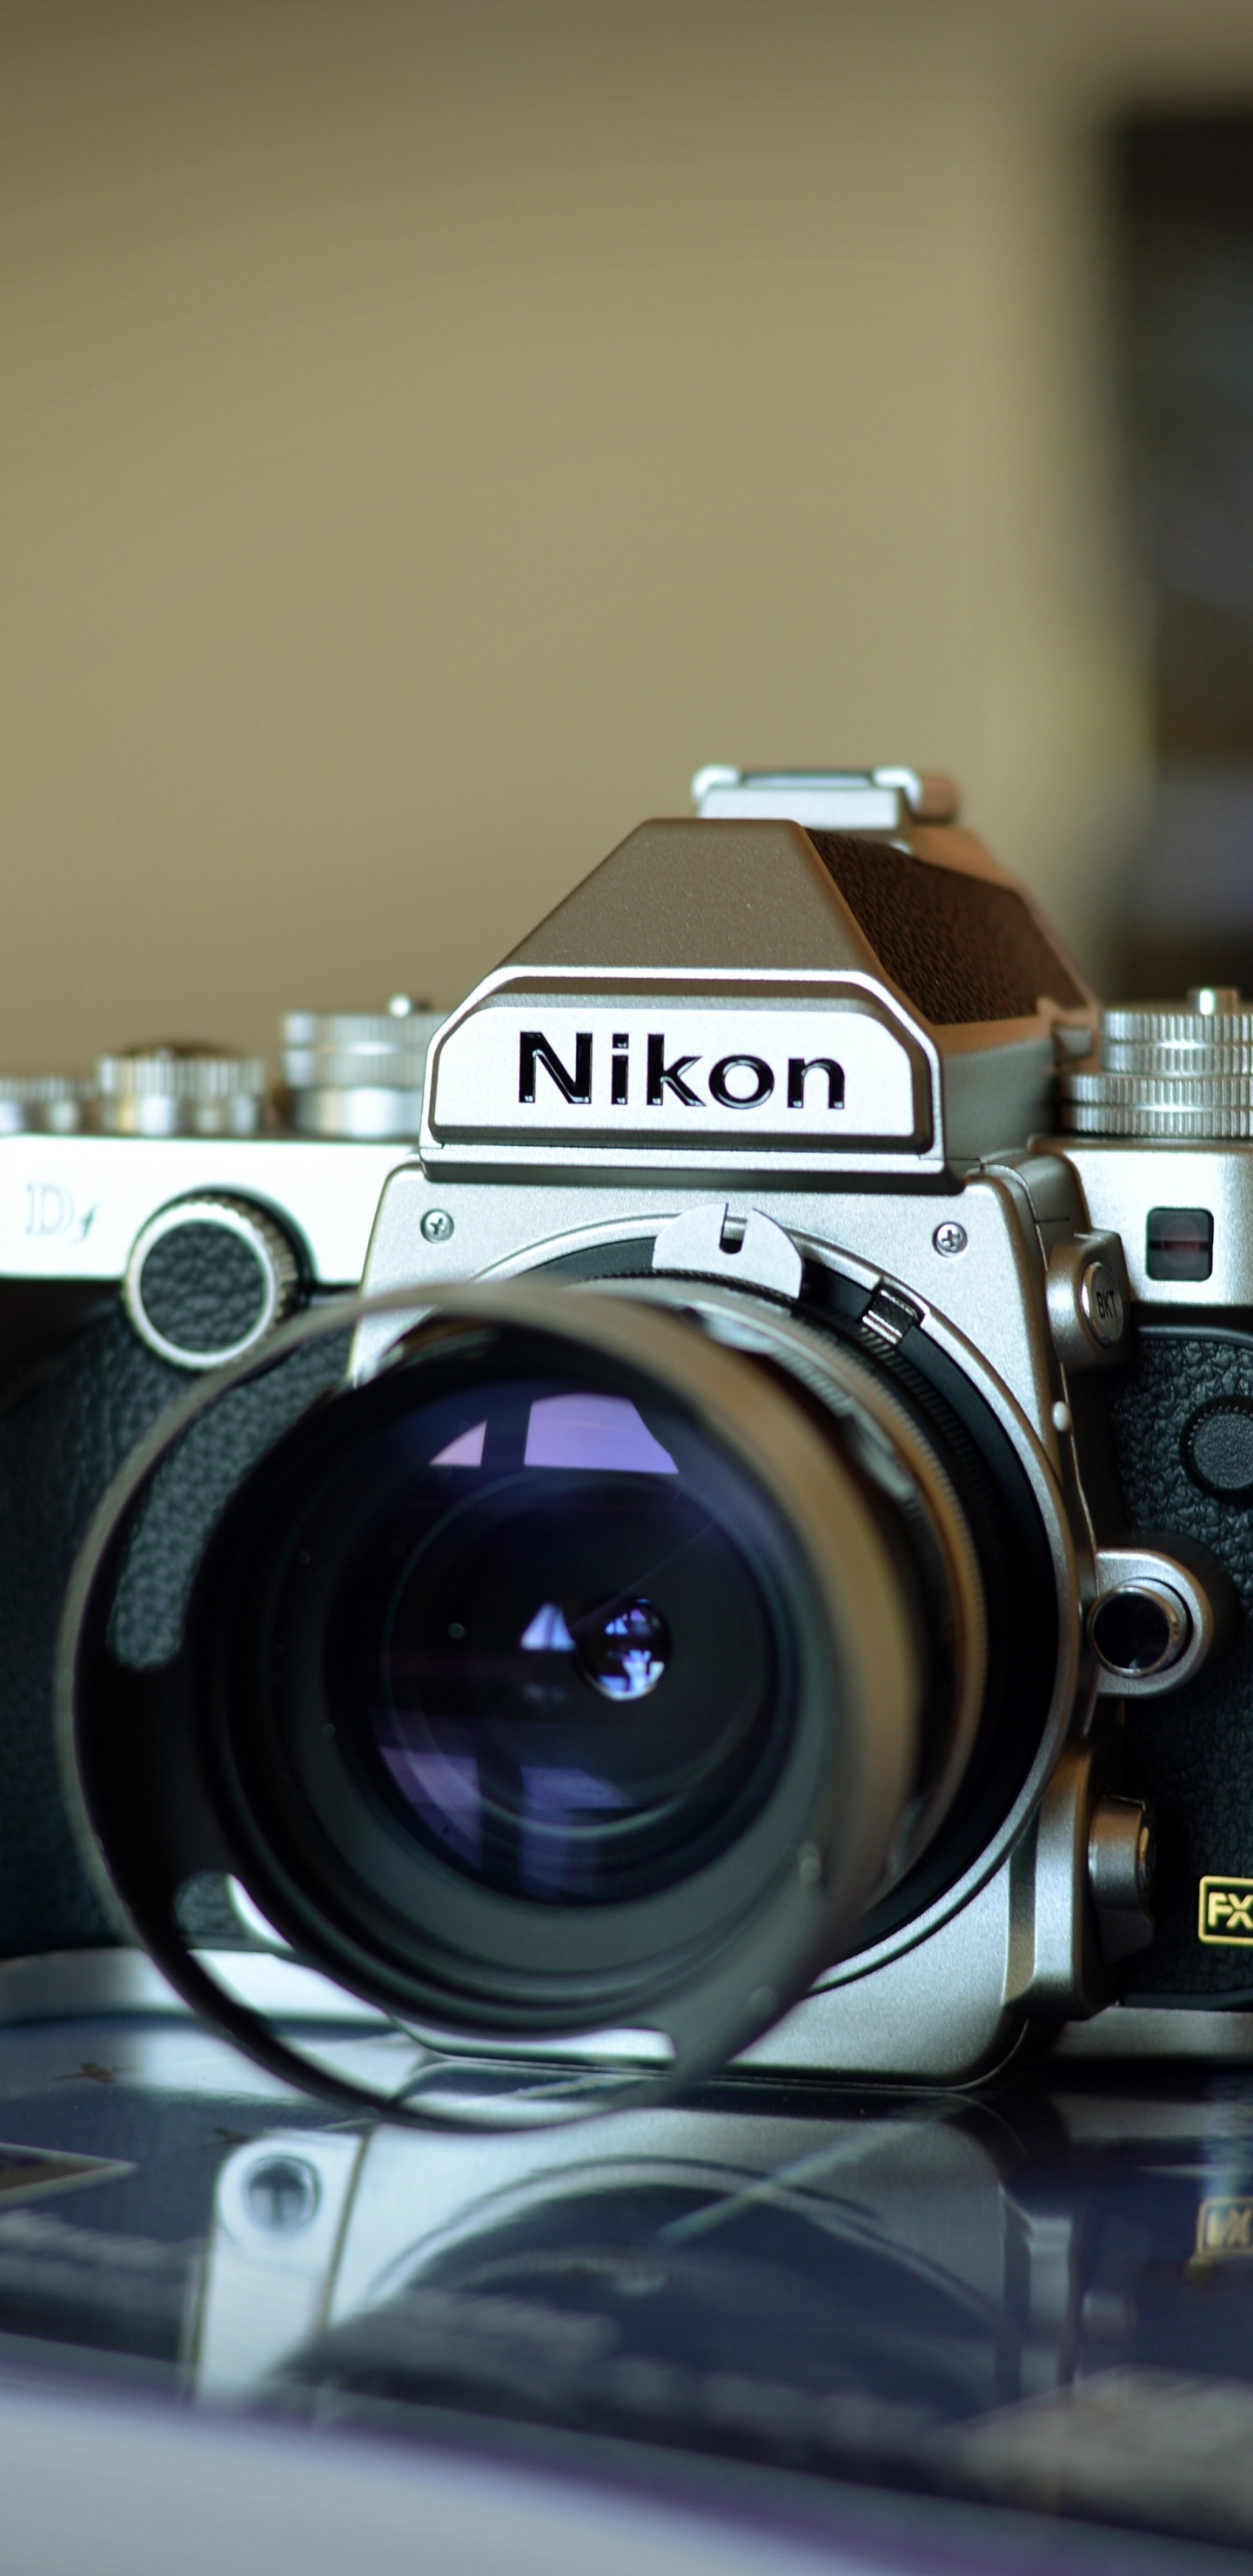 尼康, 光学照相机, 拍摄像头, 摄像机的附件, 数字照相机 壁纸 1440x2960 允许